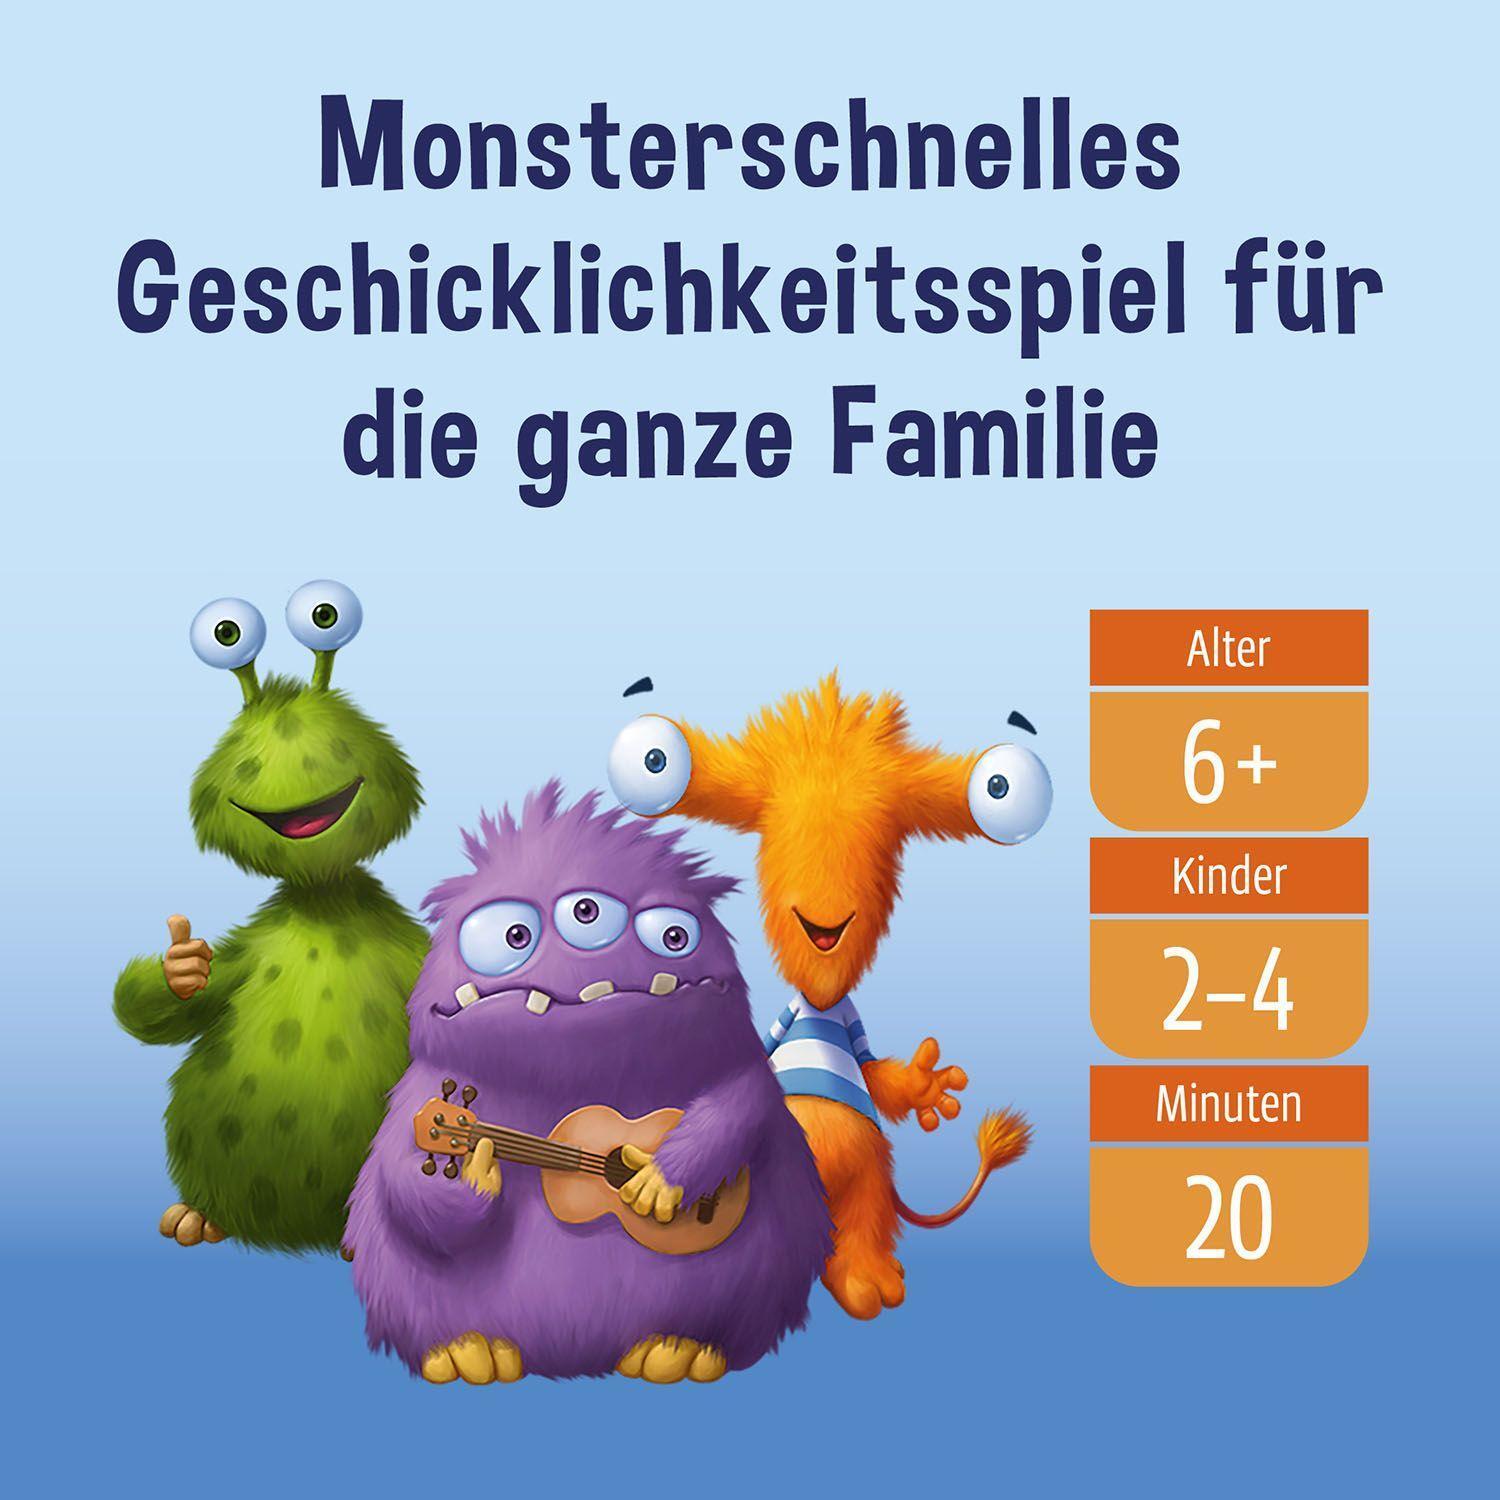 Bild: 4002051682637 | Monsterfalle | Inka Brand (u. a.) | Spiel | Deutsch | 2022 | Kosmos